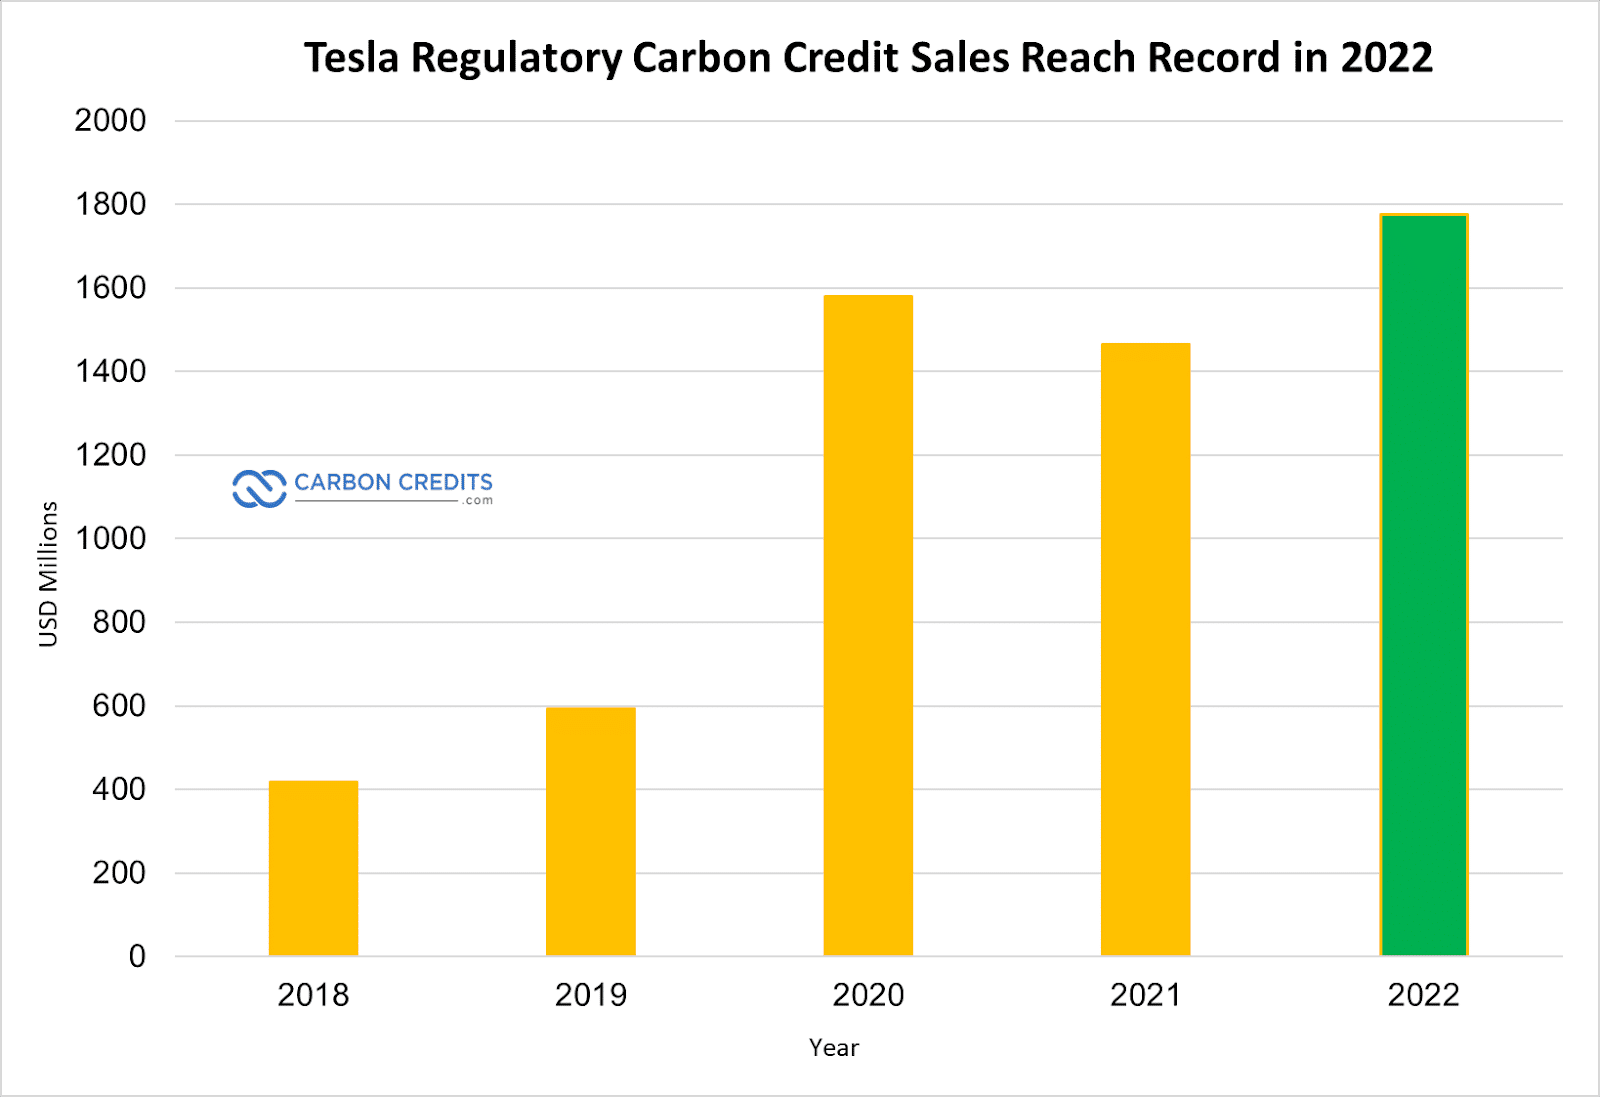 Verkoop van Tesla Carbon Credit bereikt record van $ 1.78 miljard in 2022